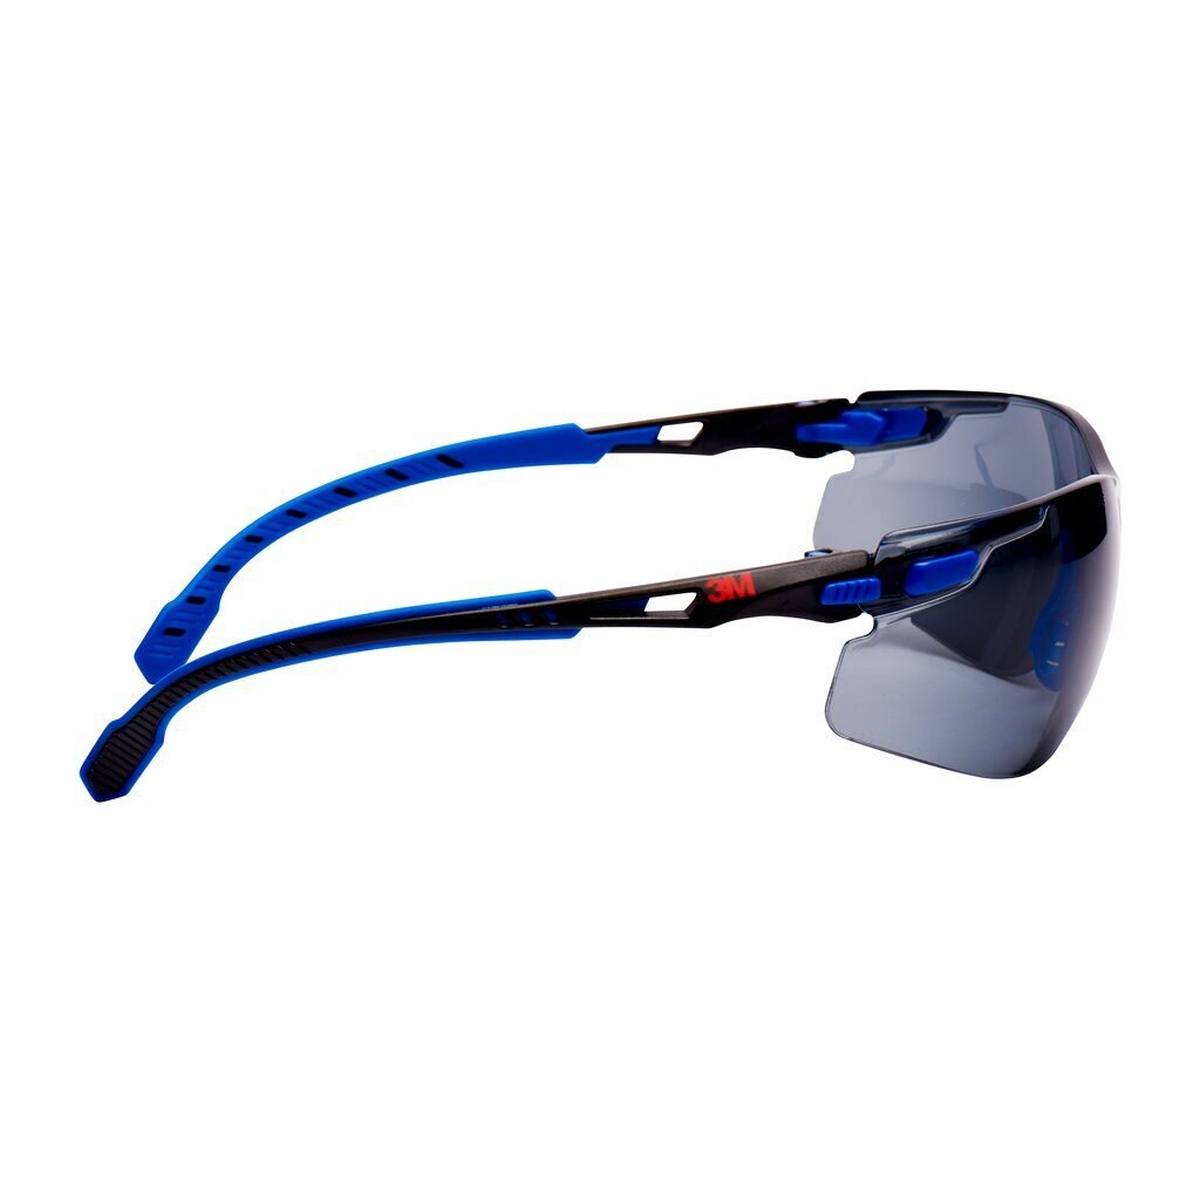 3M Gafas de protección Solus 1000, patillas azul/negro, revestimiento Scotchgard antivaho/antirayas (K&amp;N), lente gris, S1102SGAF-EU